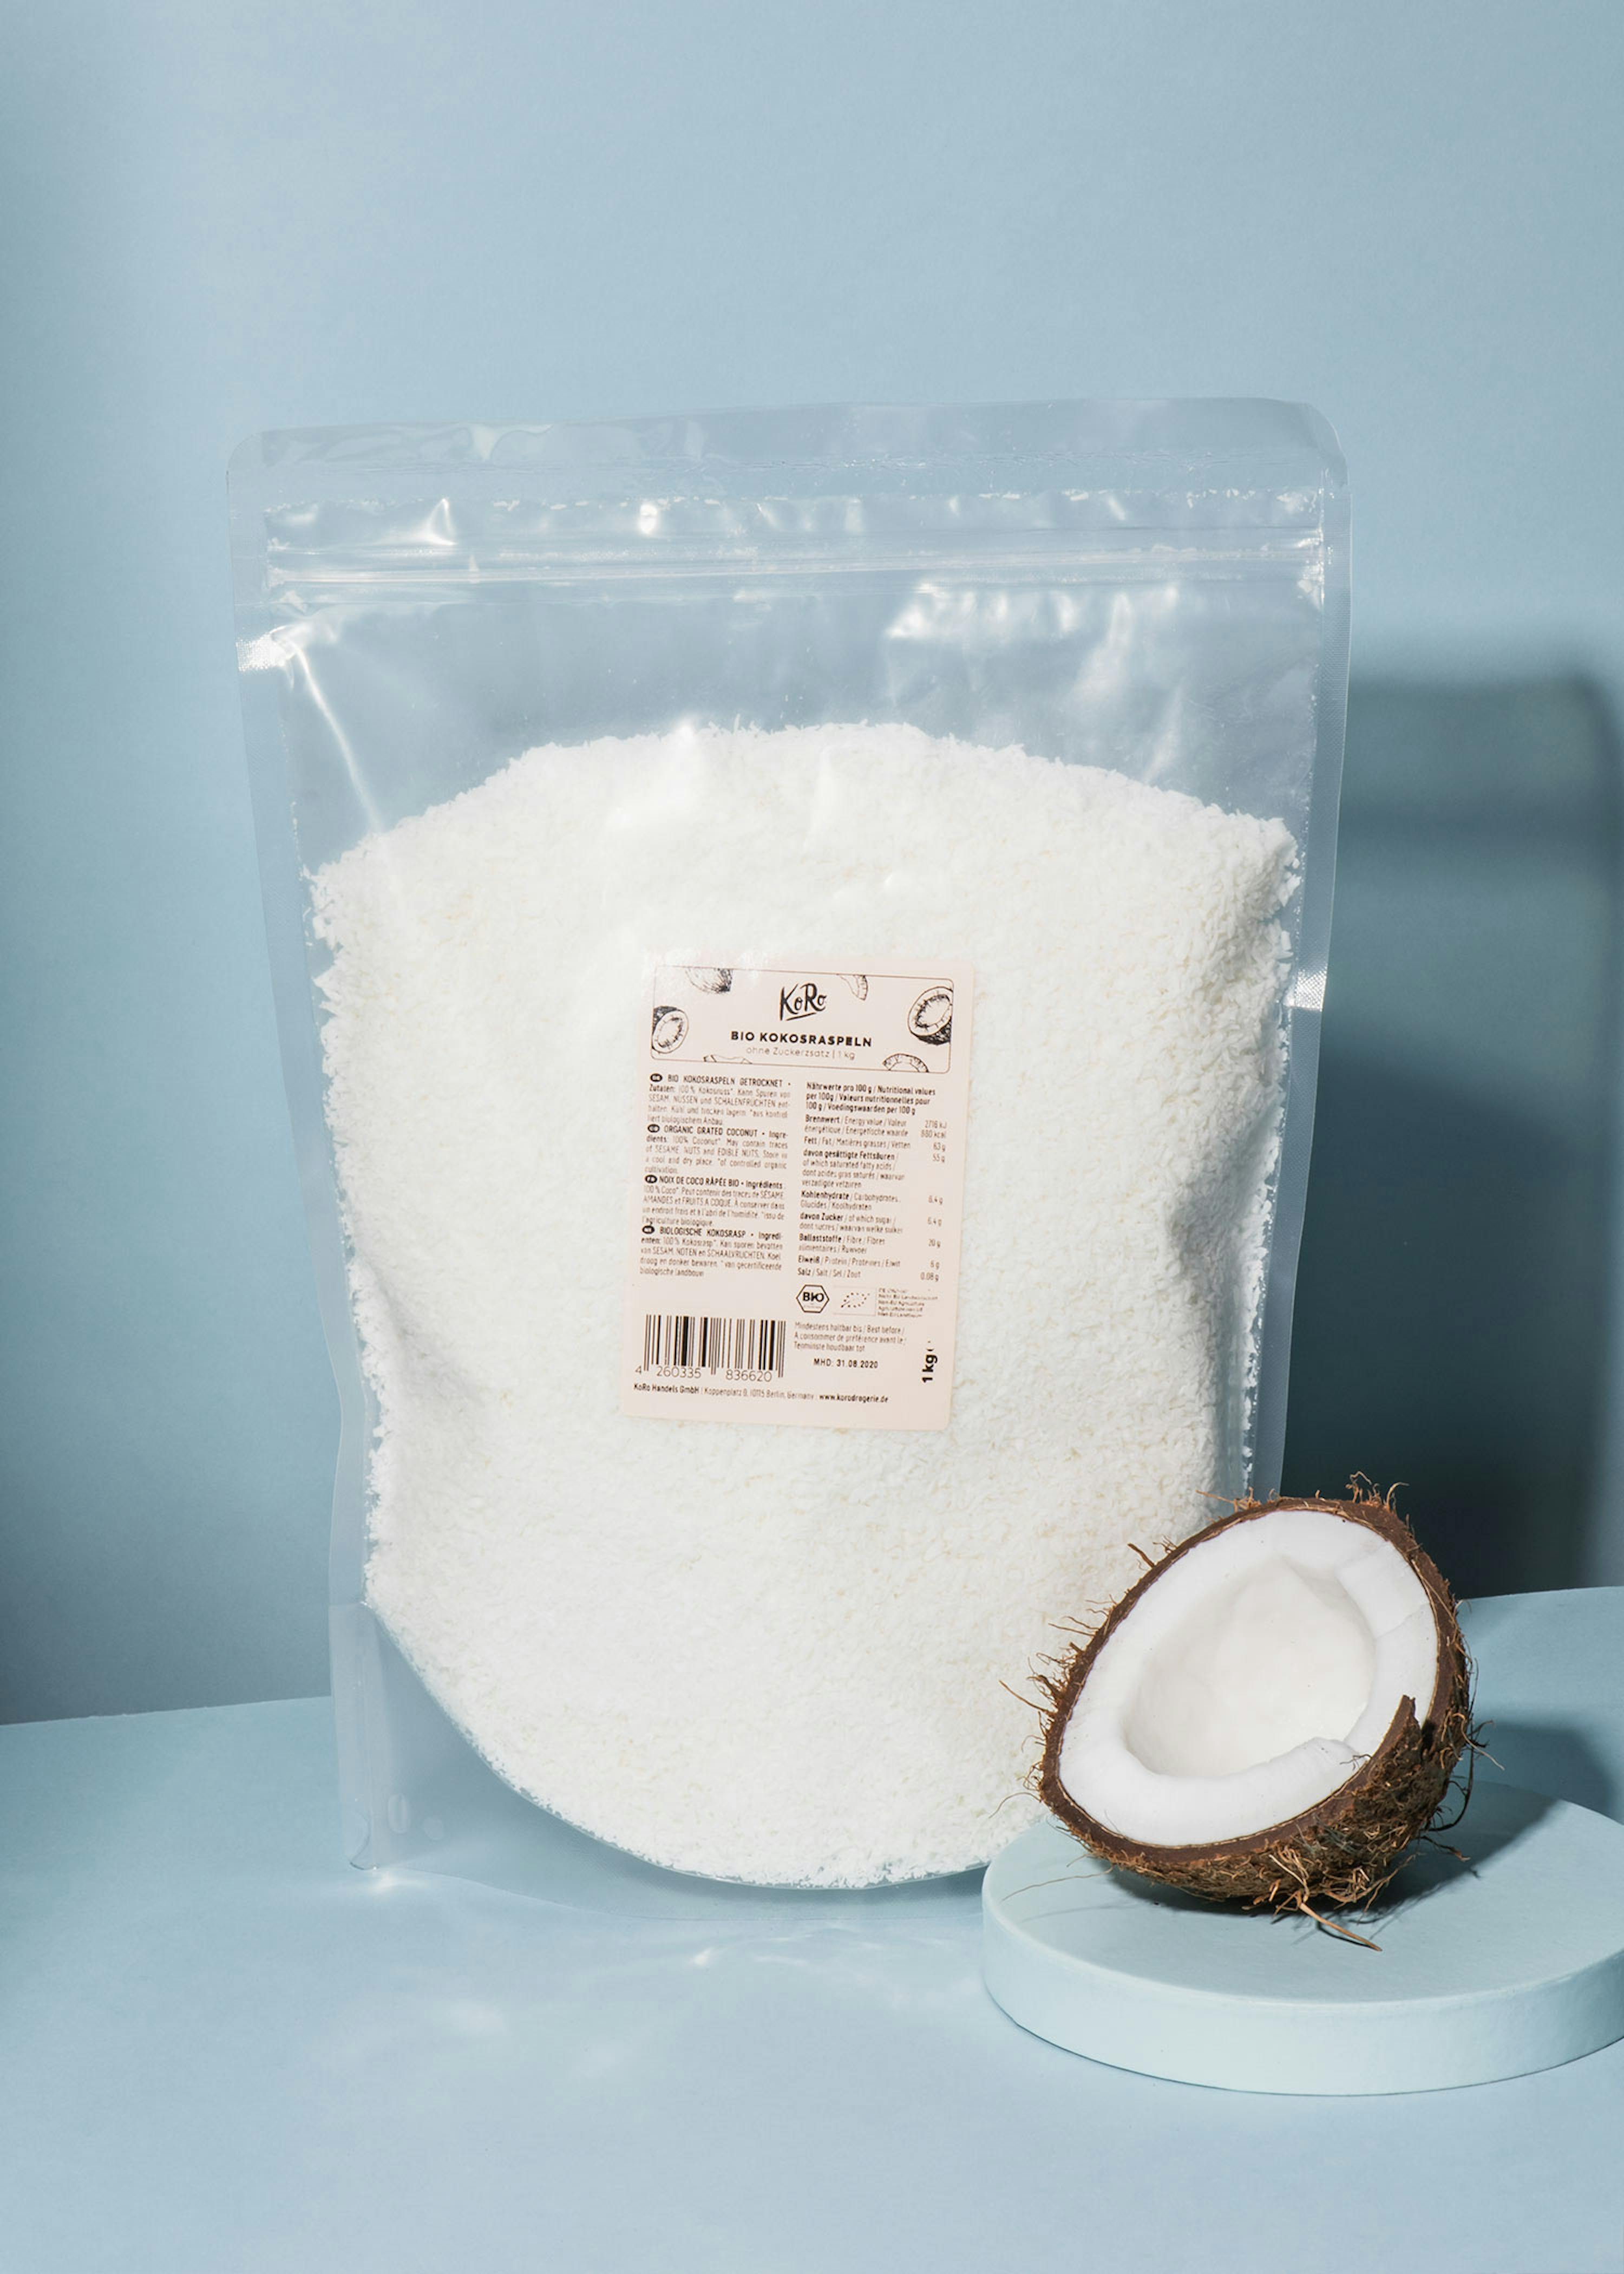 tellen grafisch Botanist Biologische kokosrasp kopen | KoRo Nederland